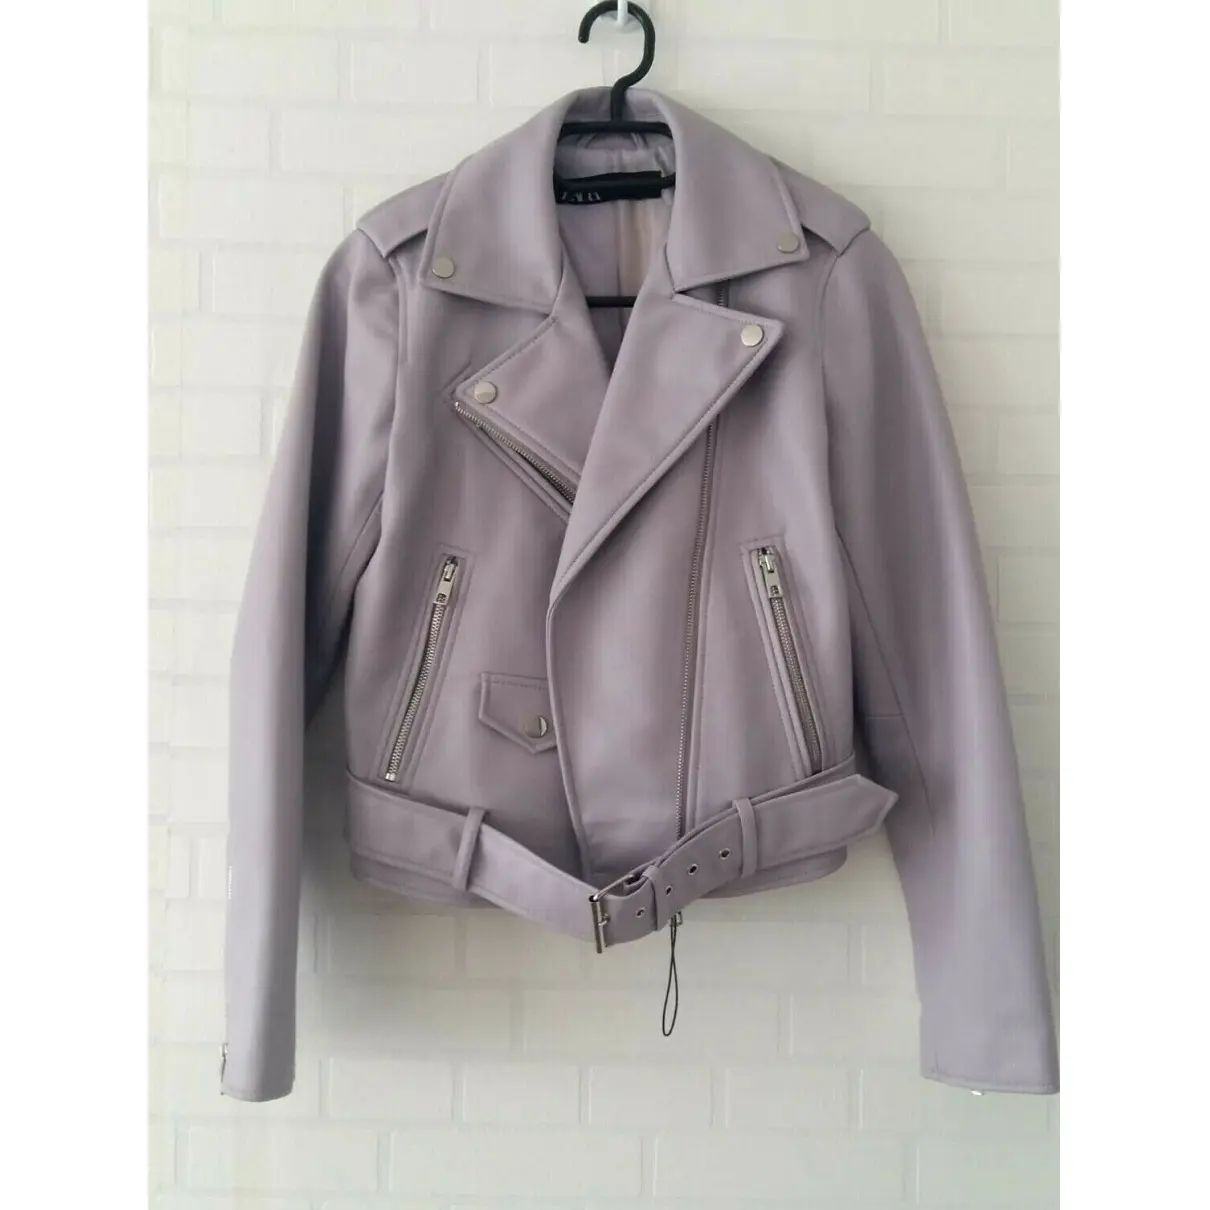 Vegan leather jacket Zara